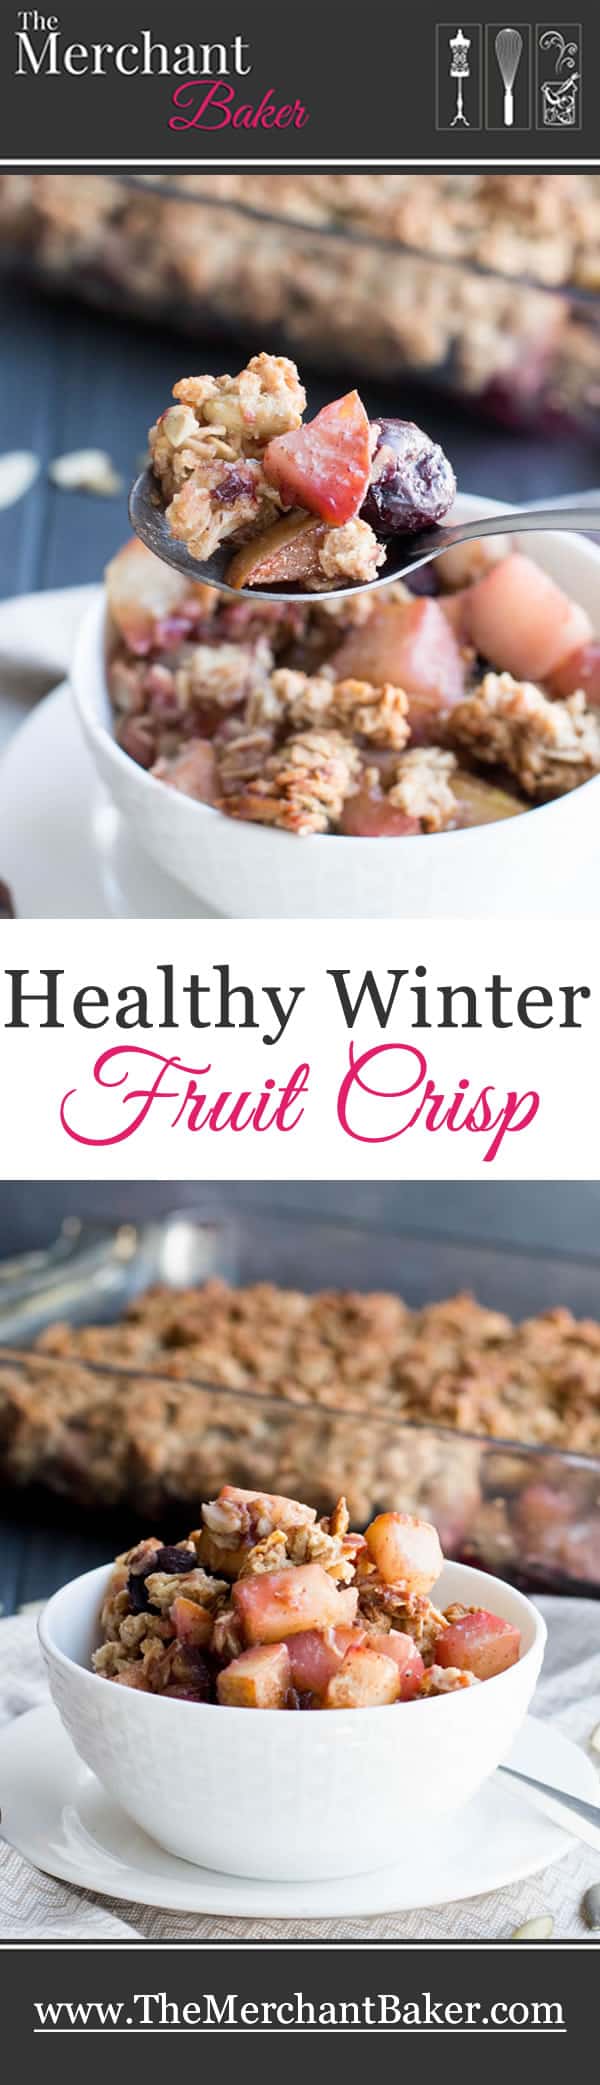 Healthy Winter Fruit Crisp